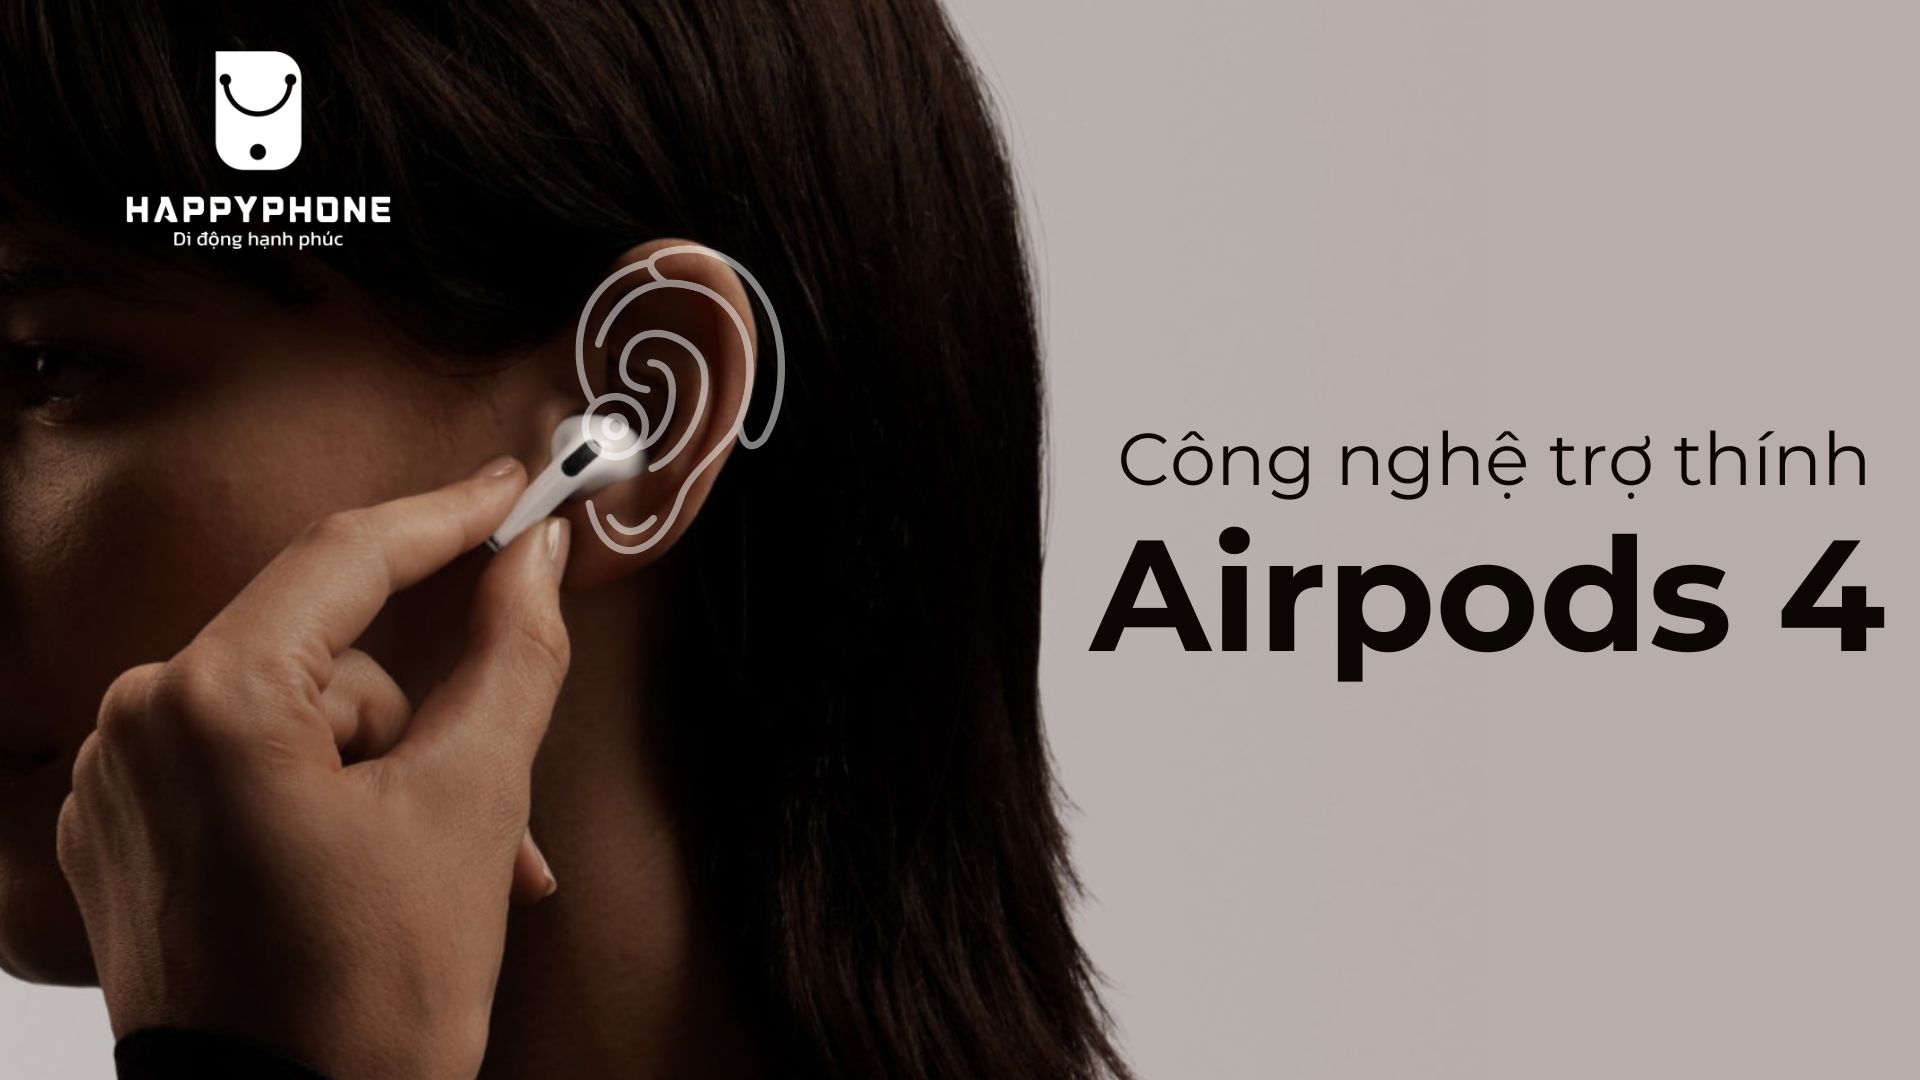 Công nghệ âm thanh Airpods 4 có chứng năng trợ thính 